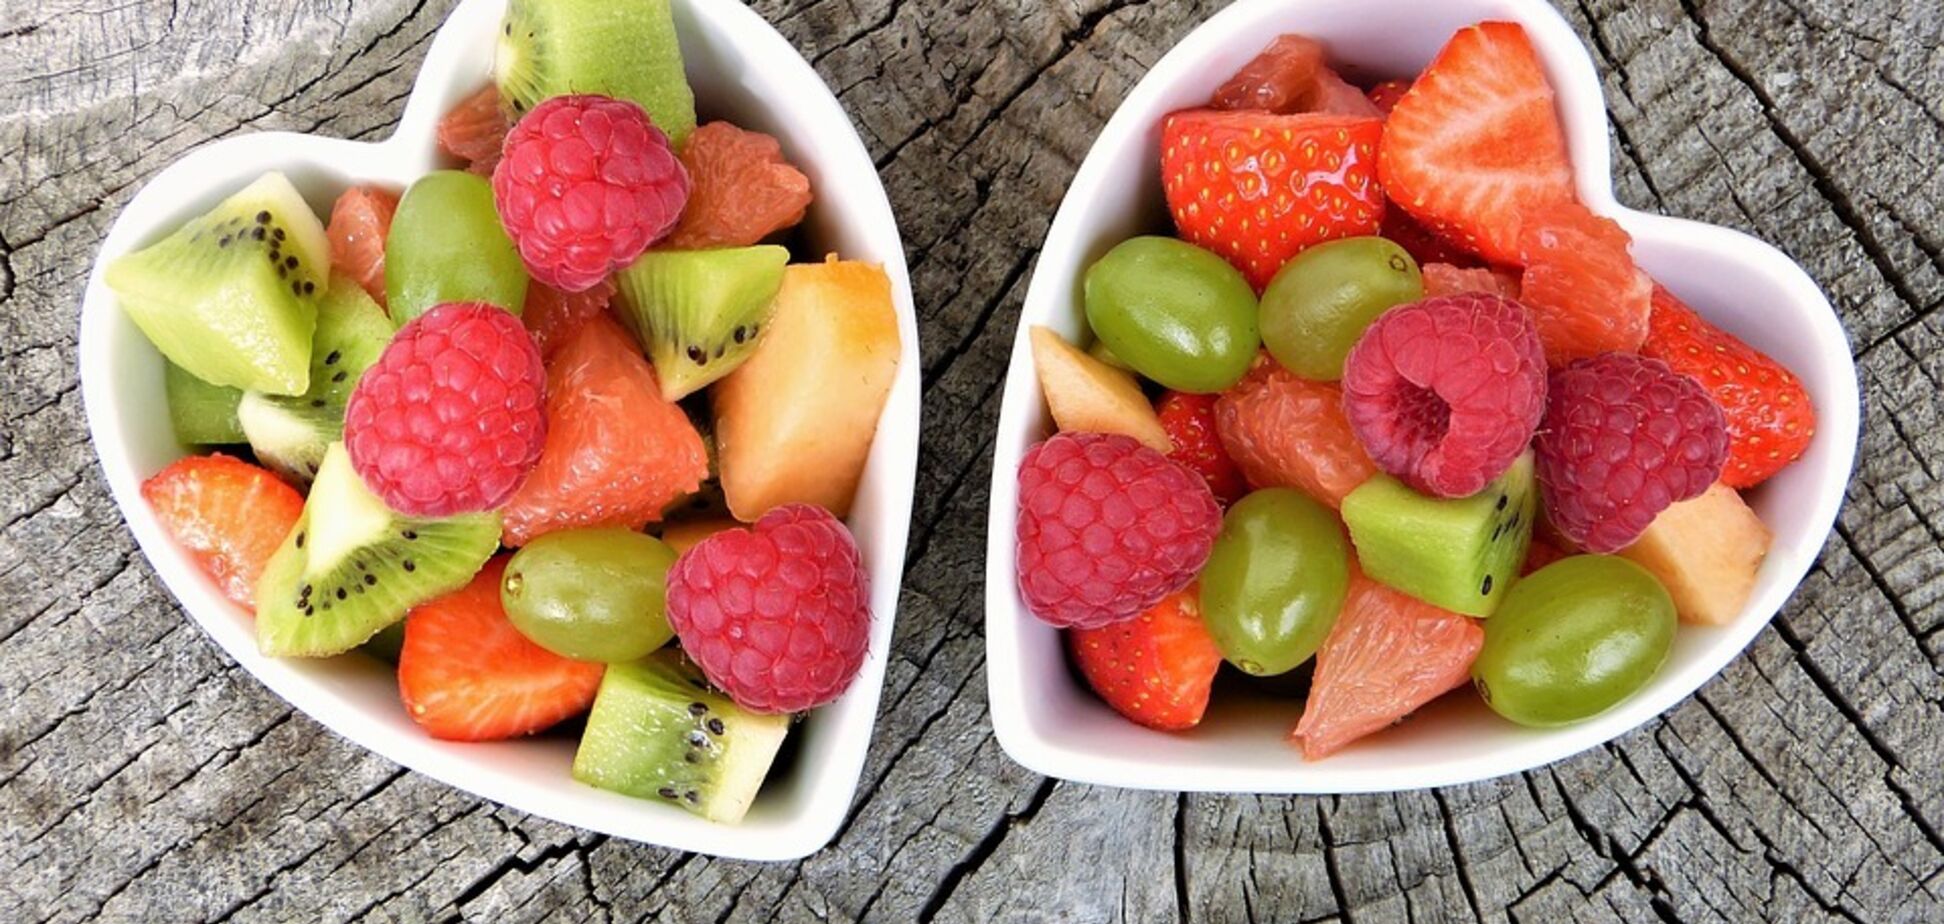 Не больше 350 граммов в день: диетолог предупредила об опасности летних фруктов